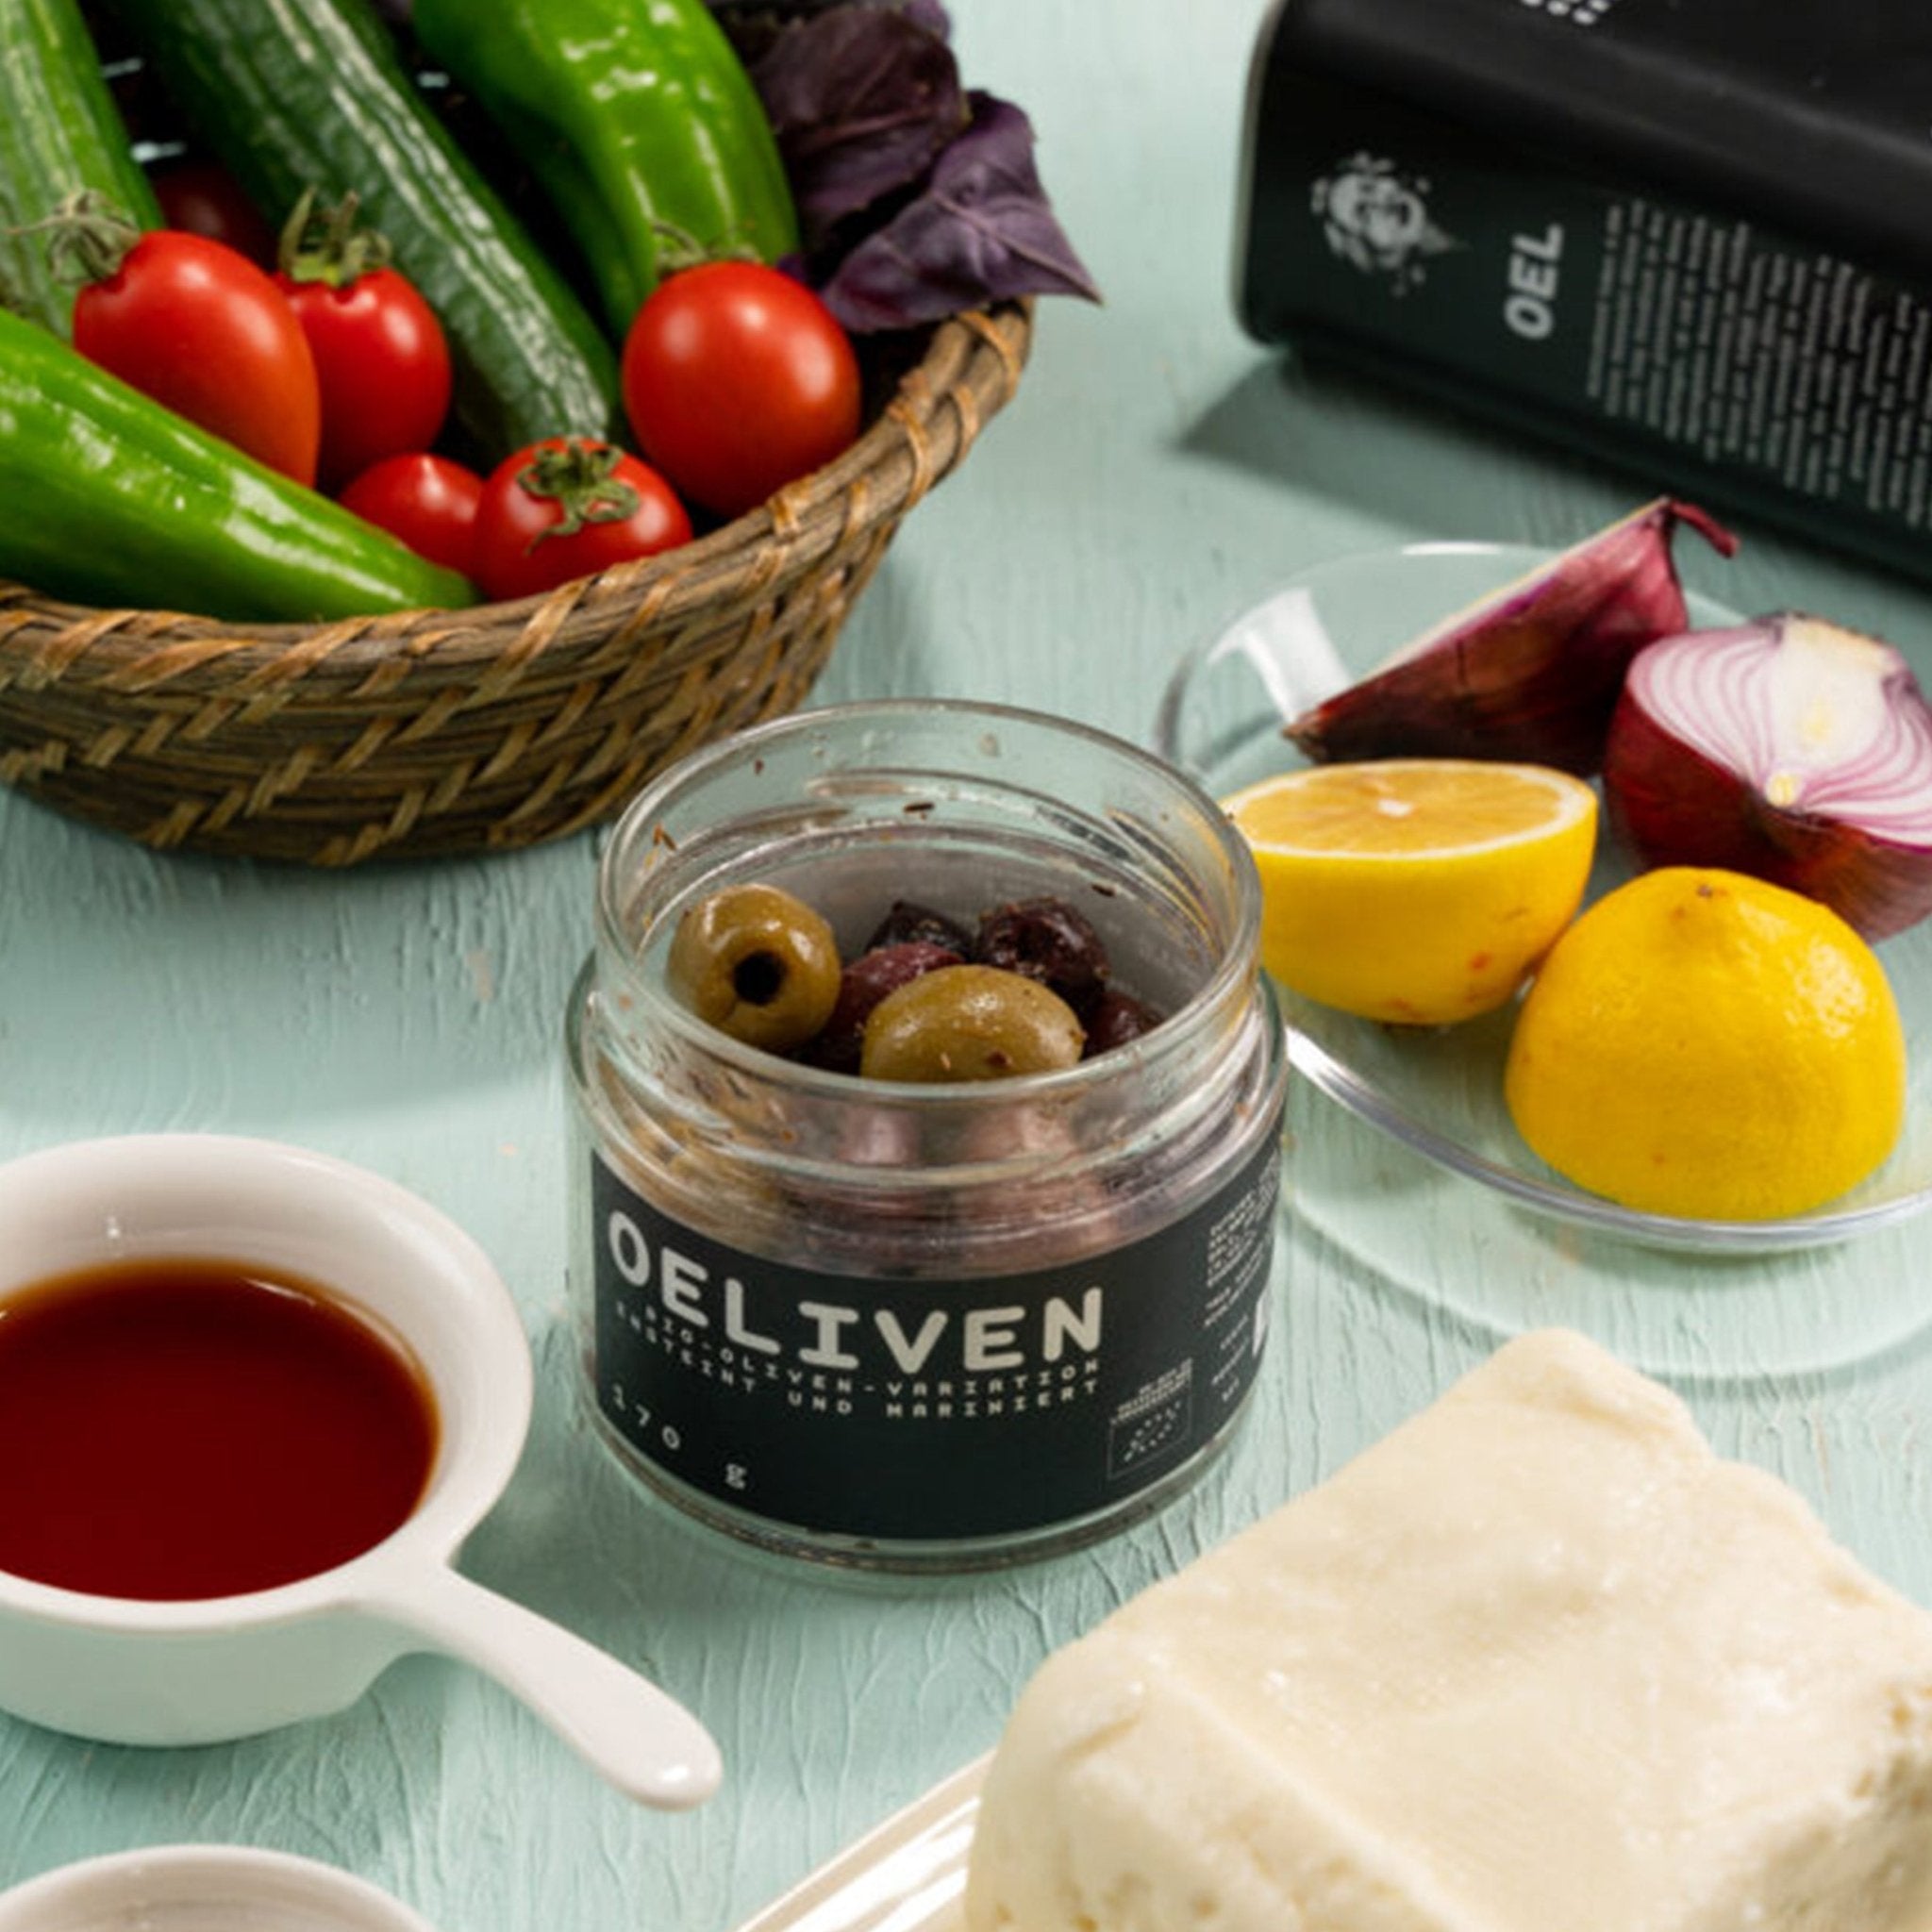 OELiven Mix-Variation 2.000 g - Gemischte Bio Oliven mit Kräutern - OEL - Griechische Produkte und Olivenöl - Bestandsartikel red. MWST (7%) - OEL Olivenprodukte